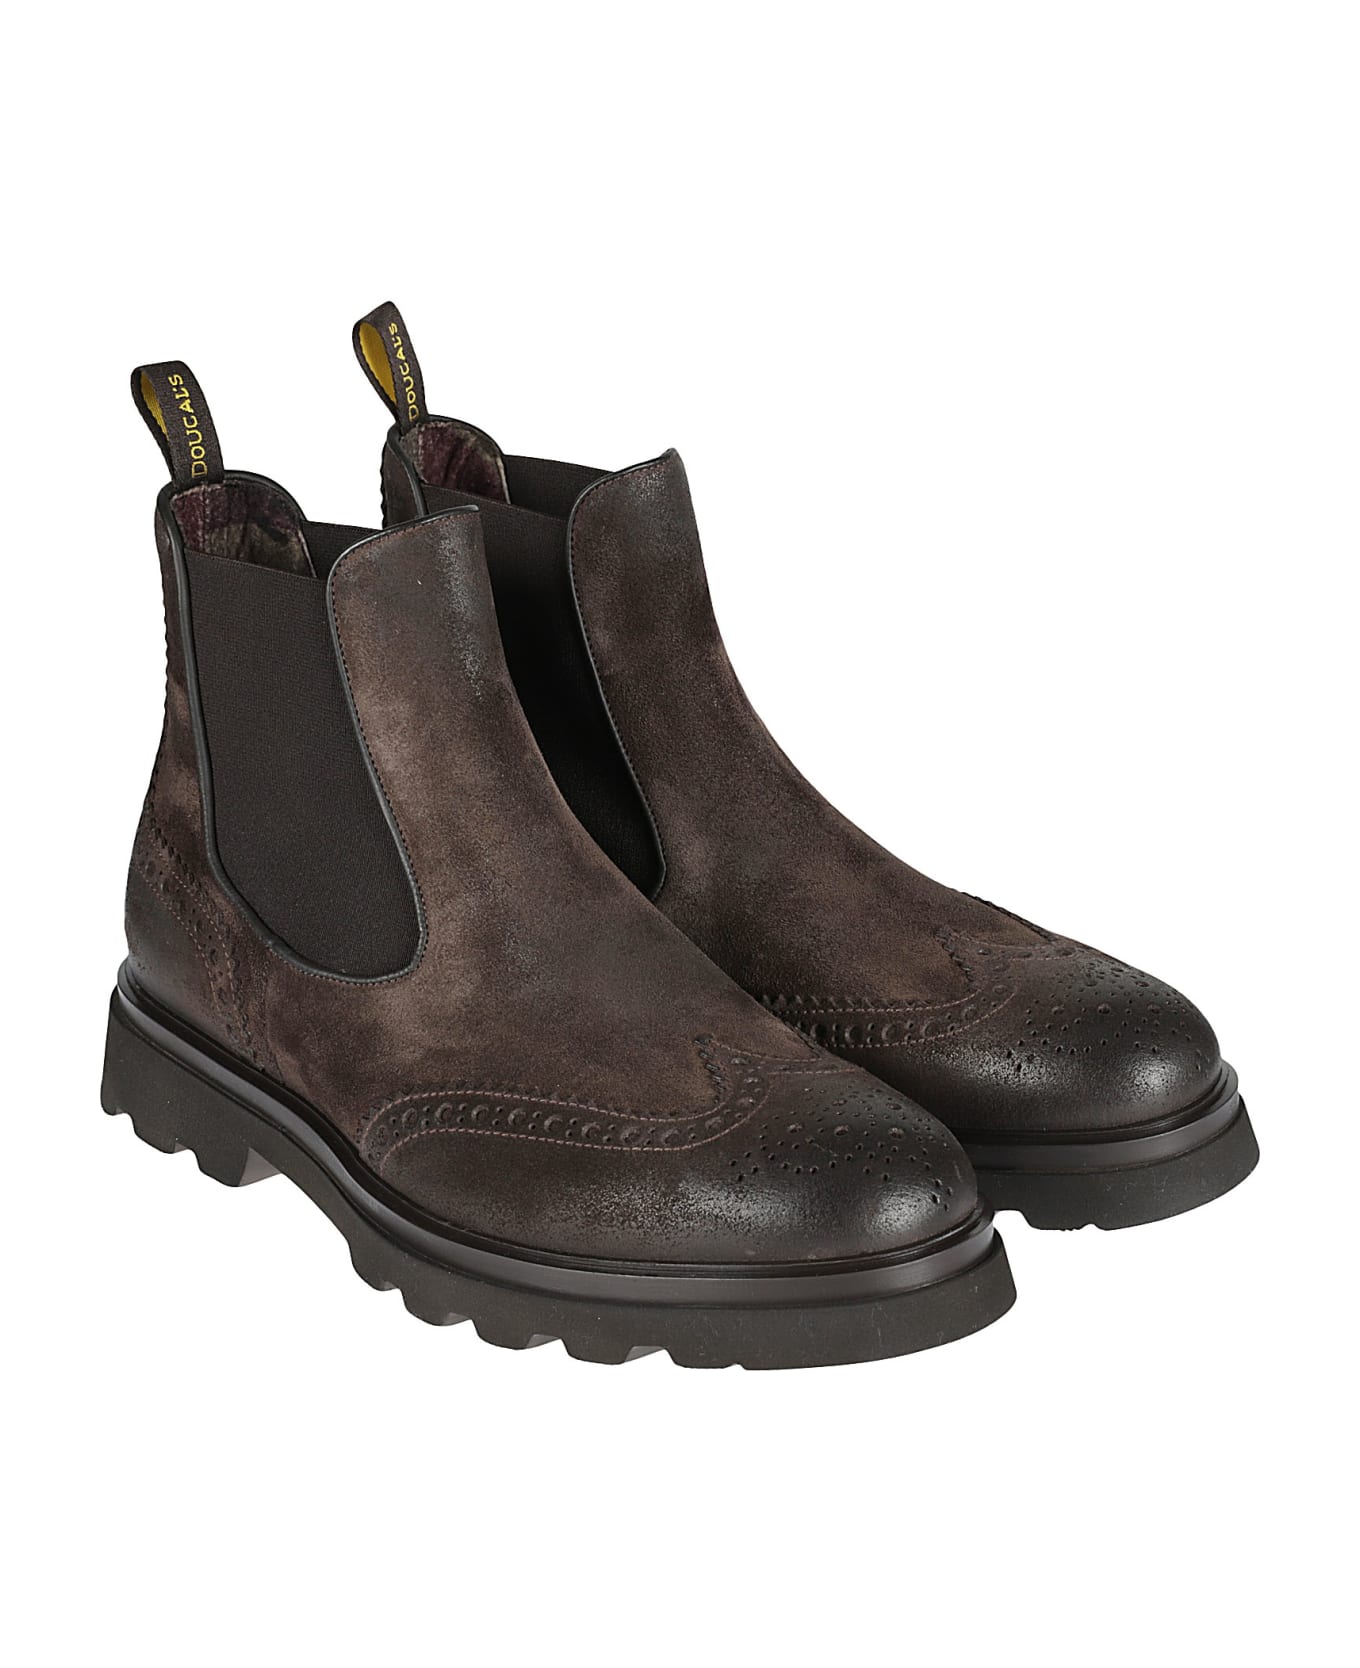 Doucal's Coda Rondine Chelsea Boots - Testa Moro/fondo Testa Moro